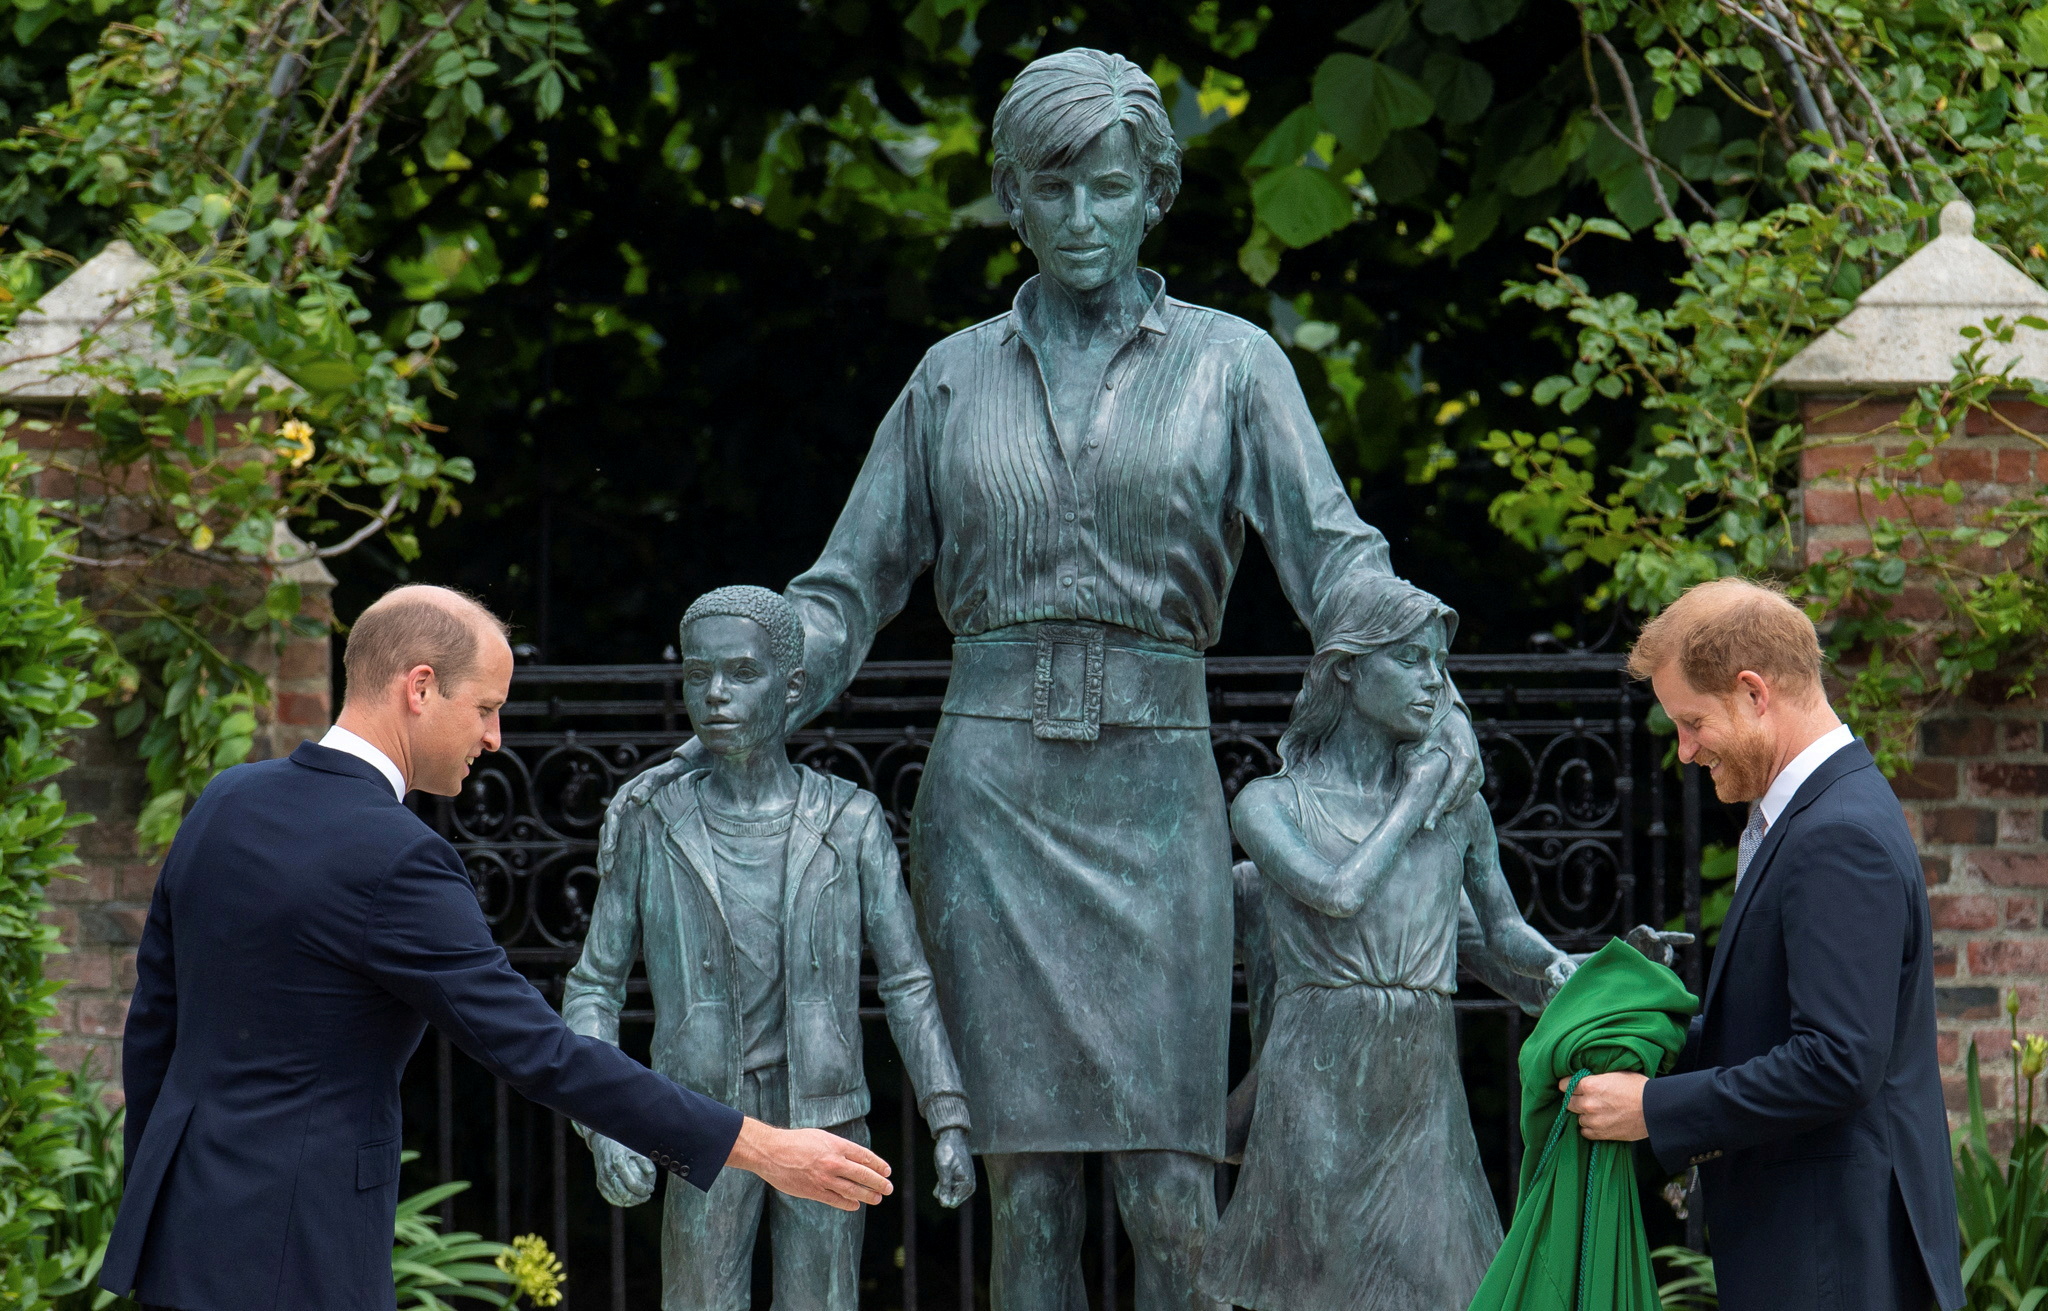 FOTO DE ARCHIVO: los príncipes William, duque de Cambridge, y Harry, duque de Sussex, durante la inauguración de una estatua que encargaron de su madre Diana, princesa de Gales, en el Jardín Sunken Garden del Palacio de Kensington, Londres, el 1 de julio de 2021 (Reuters)